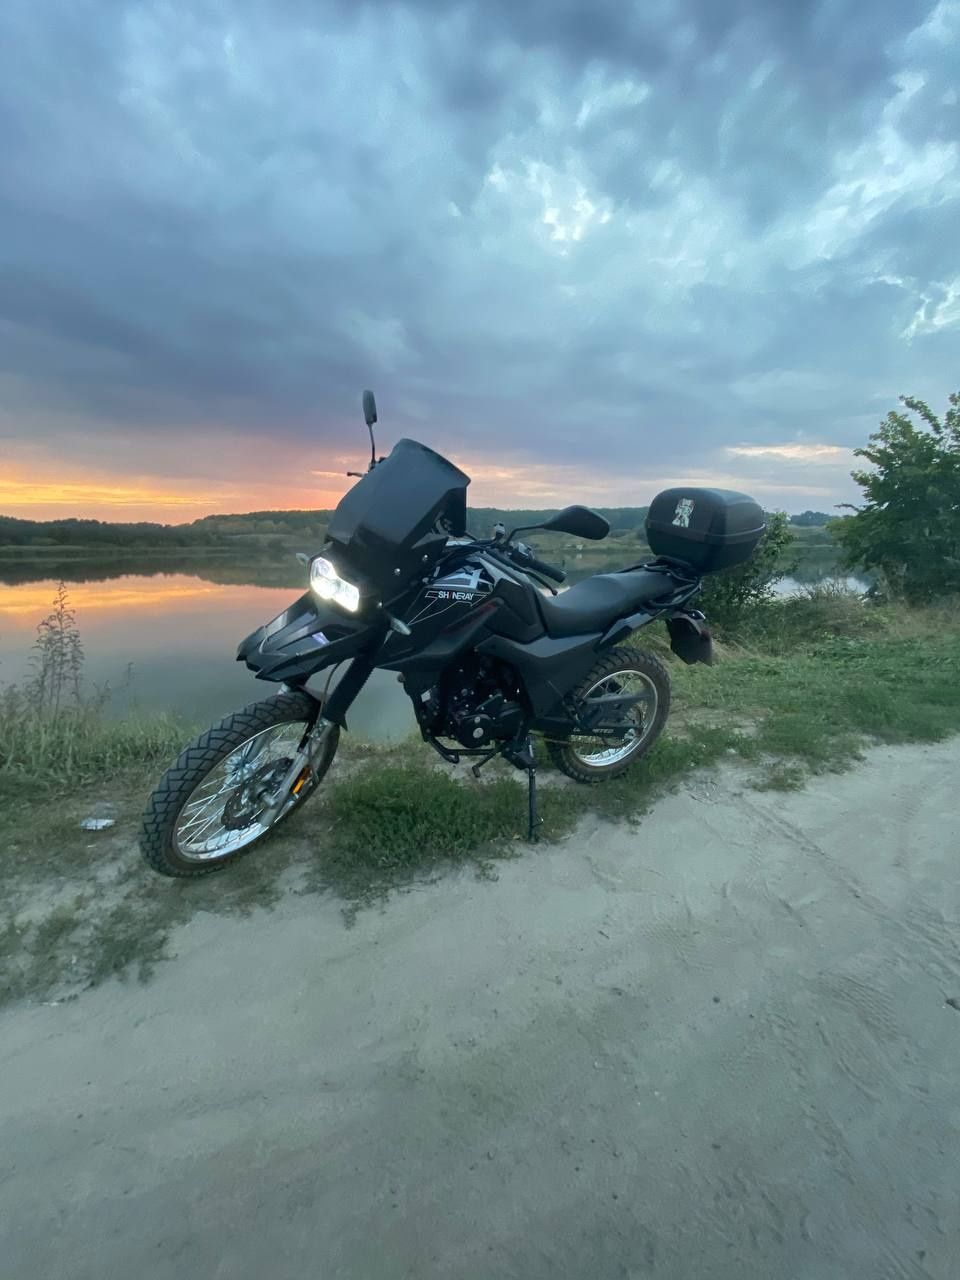 Мотоцикл Shineray x-trail 200